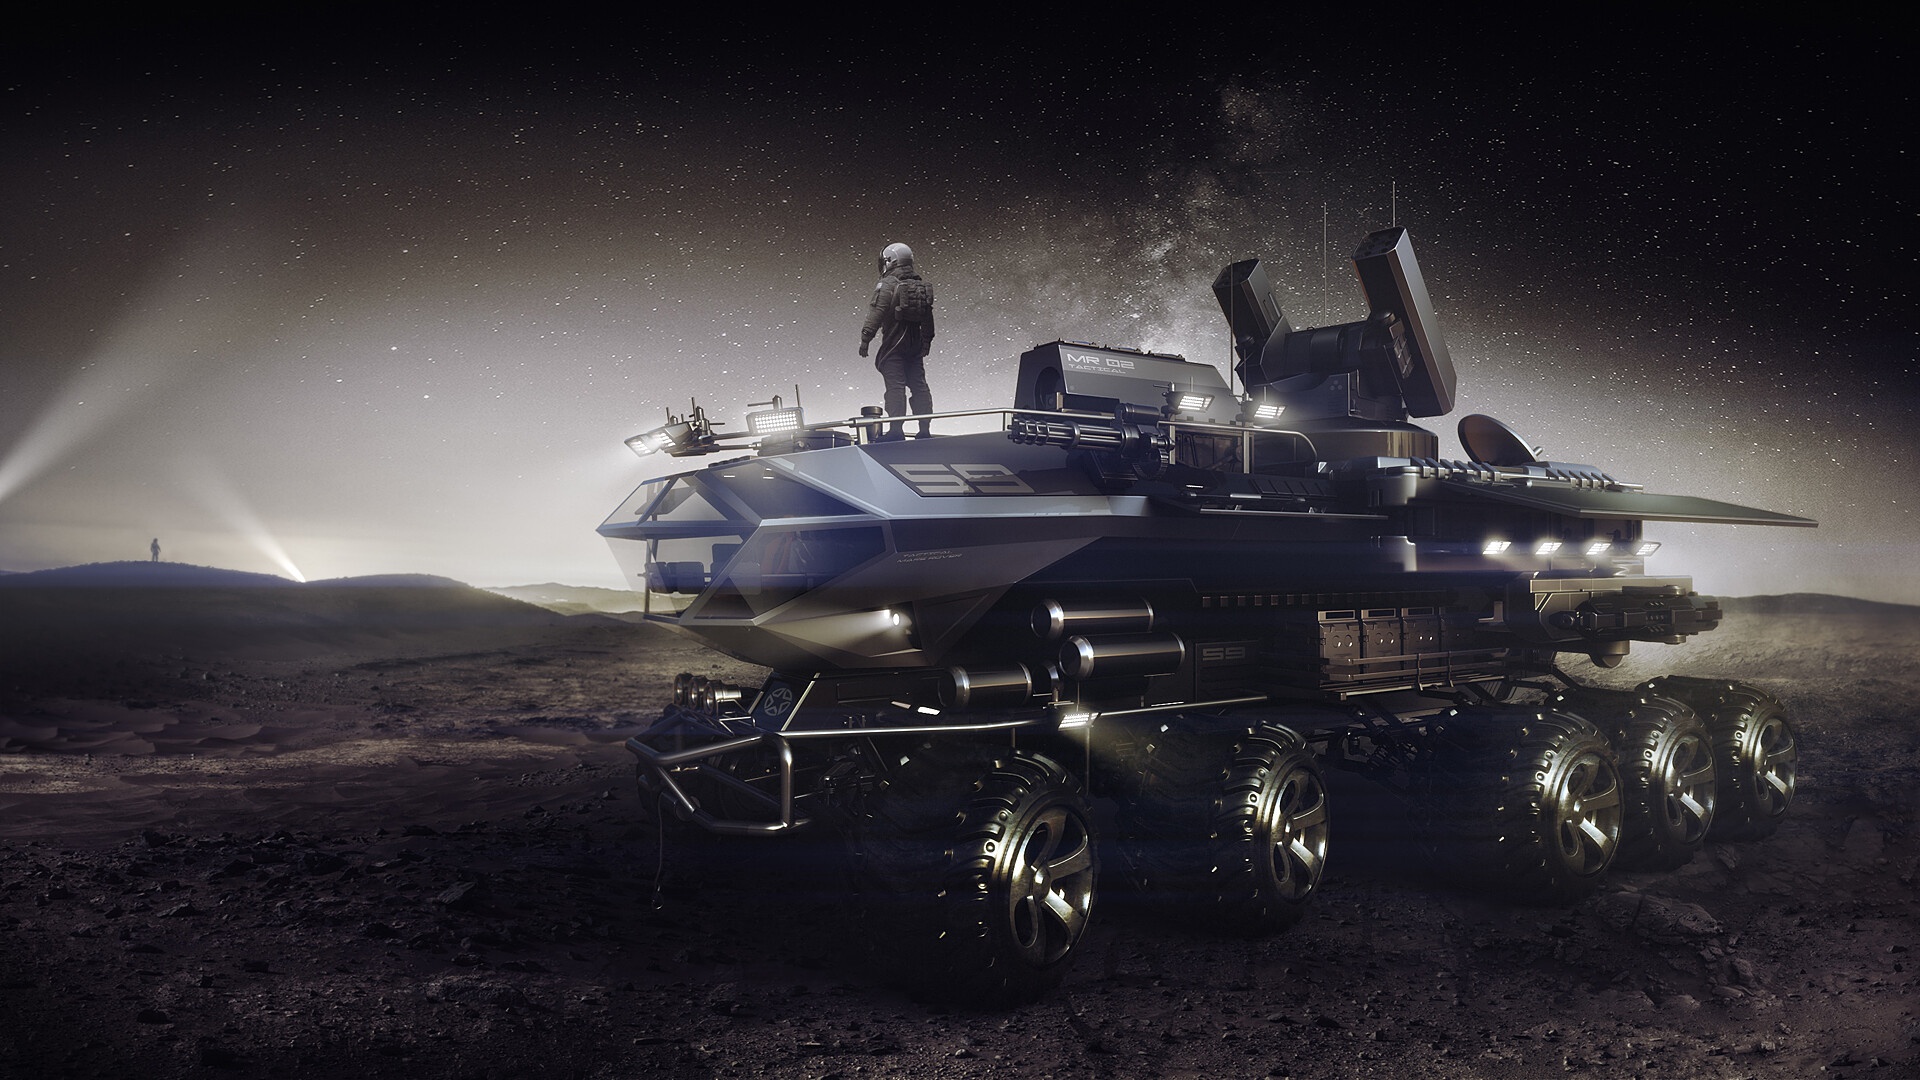 Sci Fi Vehicle HD Wallpaper by Encho Enchev